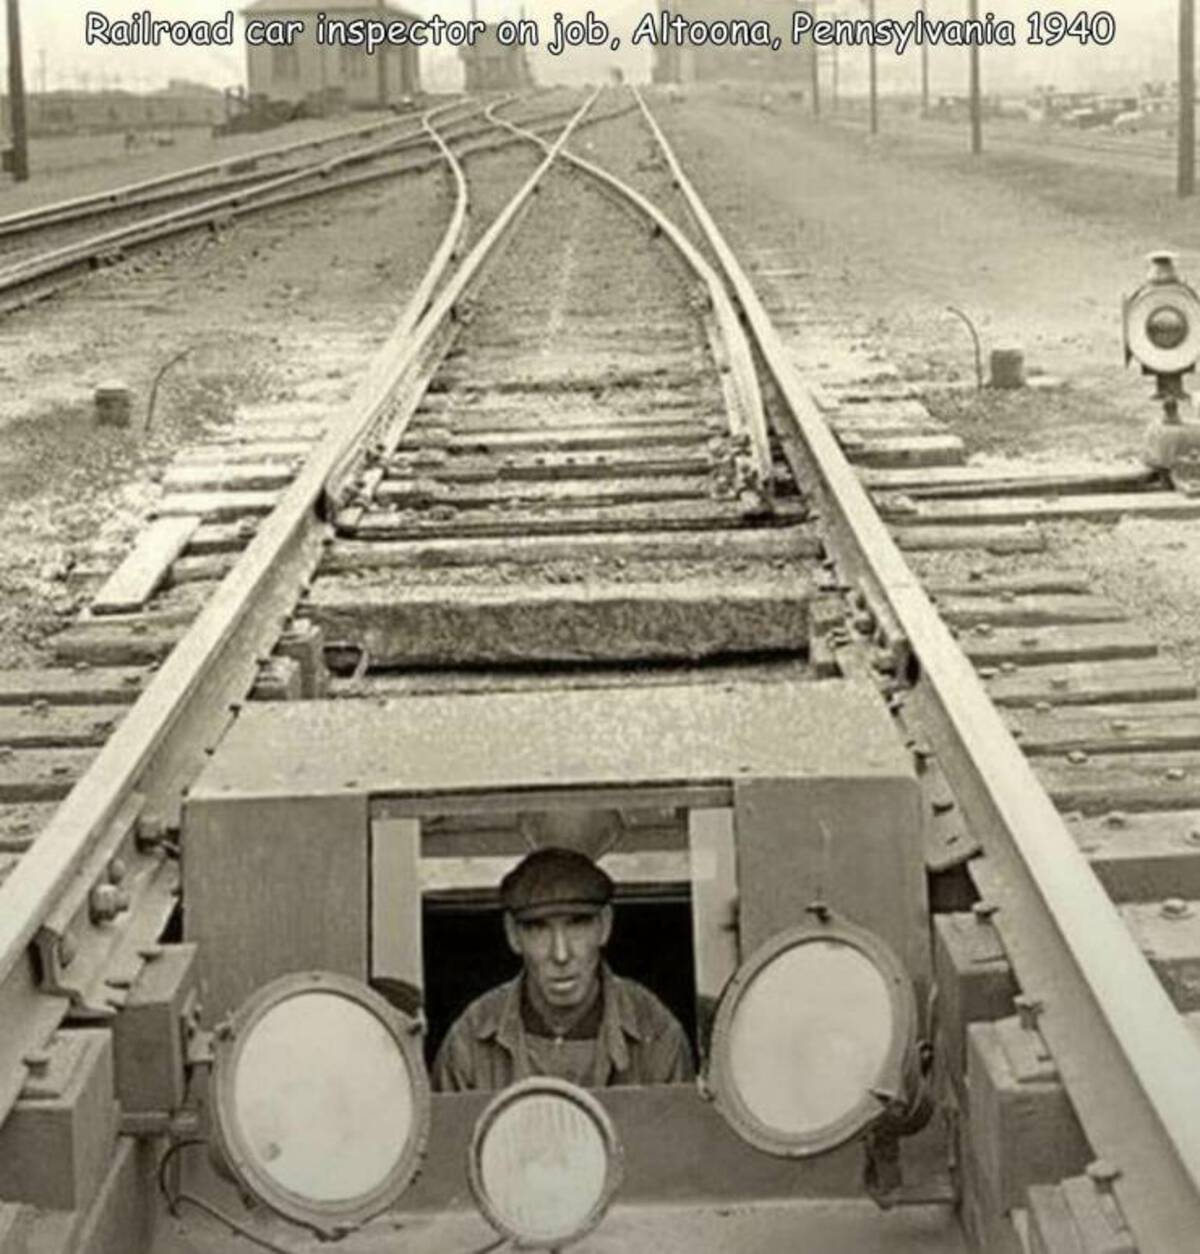 railroad hot box - Railroad car inspector on job, Altoona, Pennsylvania 1940